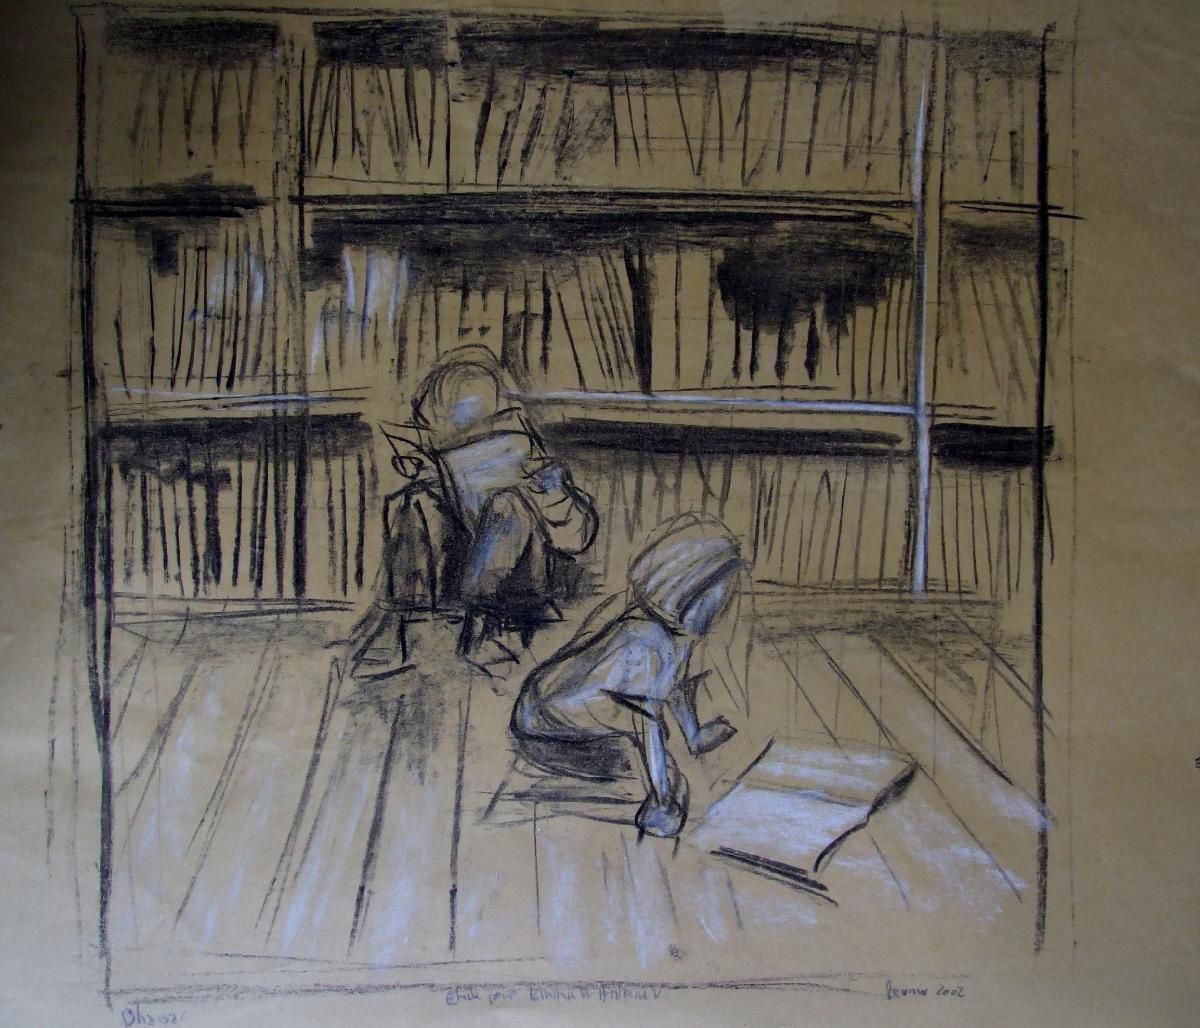 Pfuu, toujours sur le front : j'aime les livres et, hop, en 1998, j'ai dessiné chez les libraires parisiens : ça m'a donné matière à tableau jusqu'en 2000 et même au-delà 